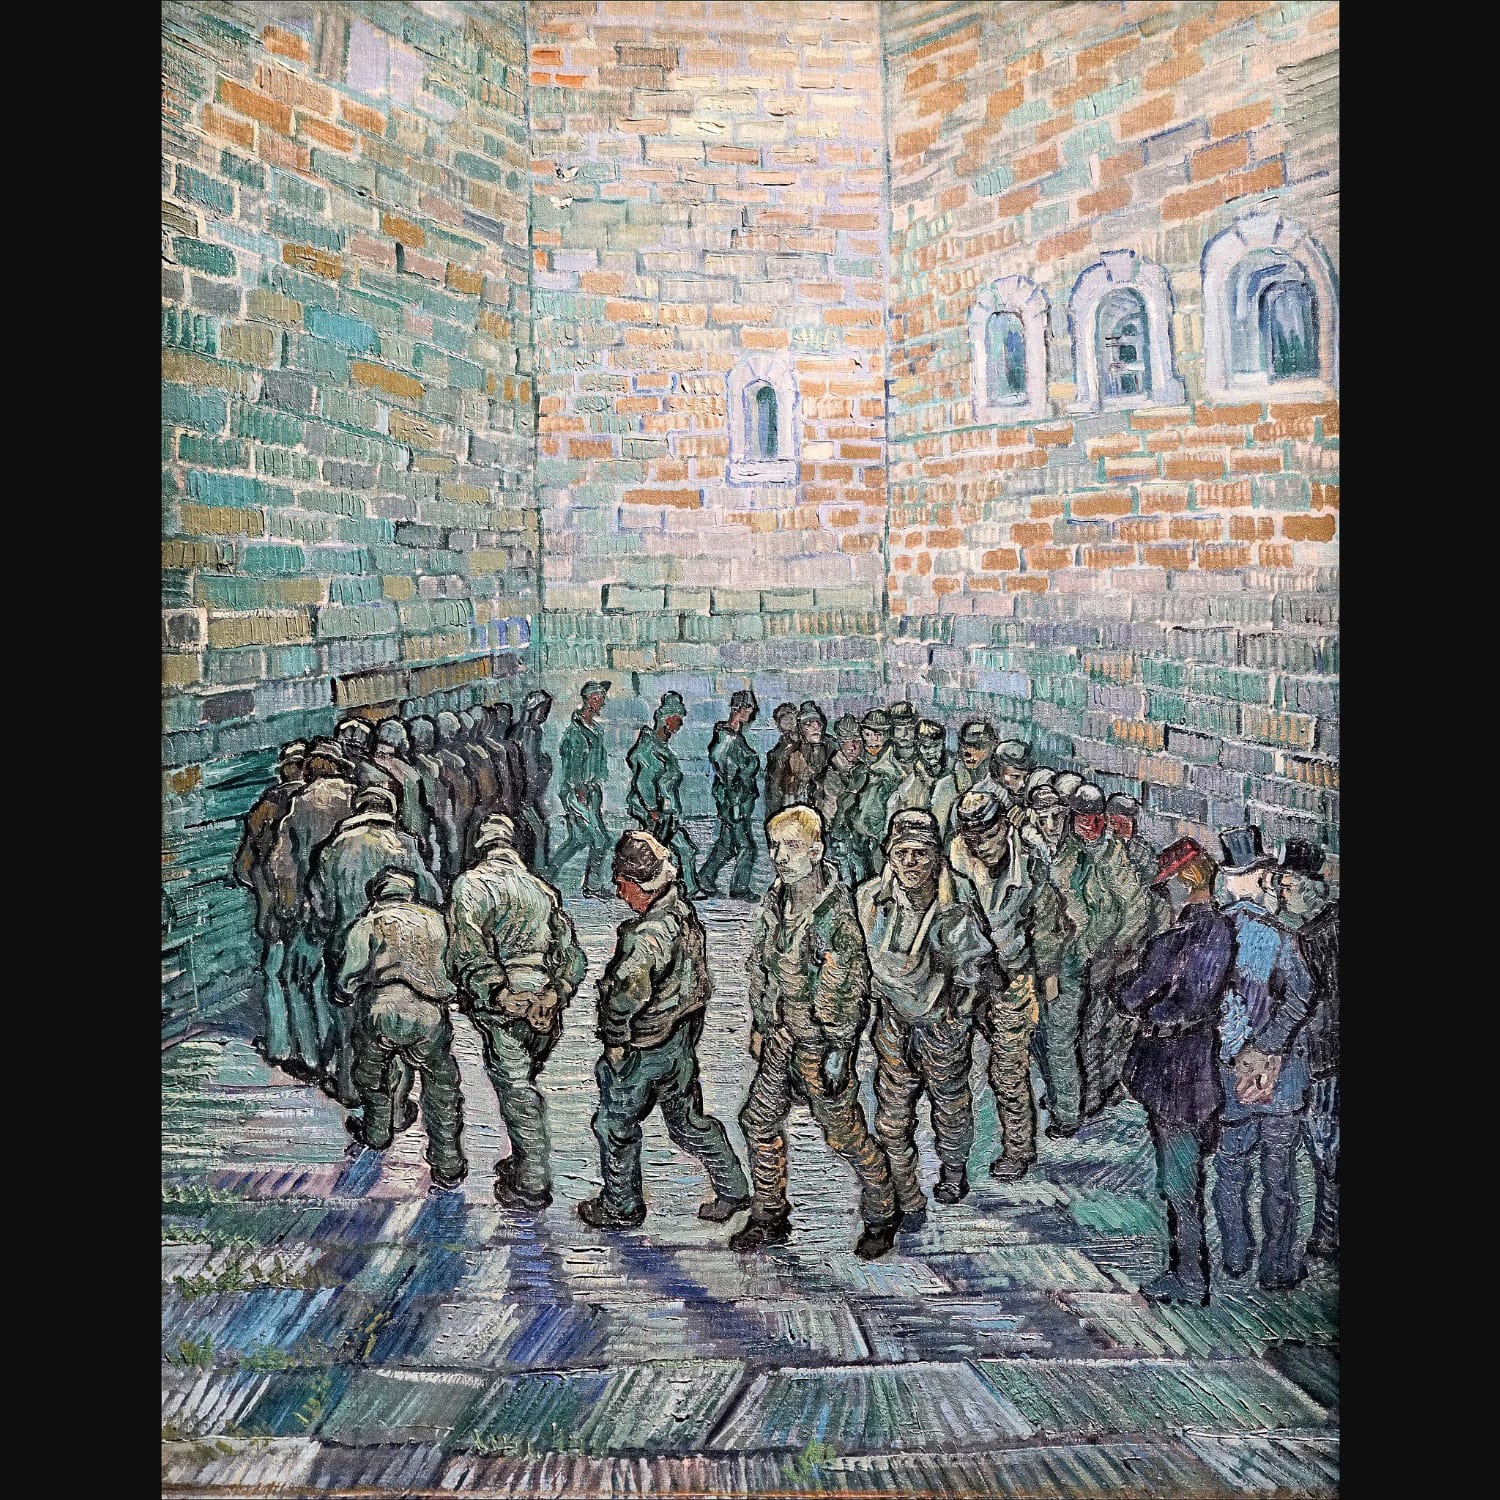 Vincent van Gogh, Prisoners' Round (after Gustave Doré), 1890